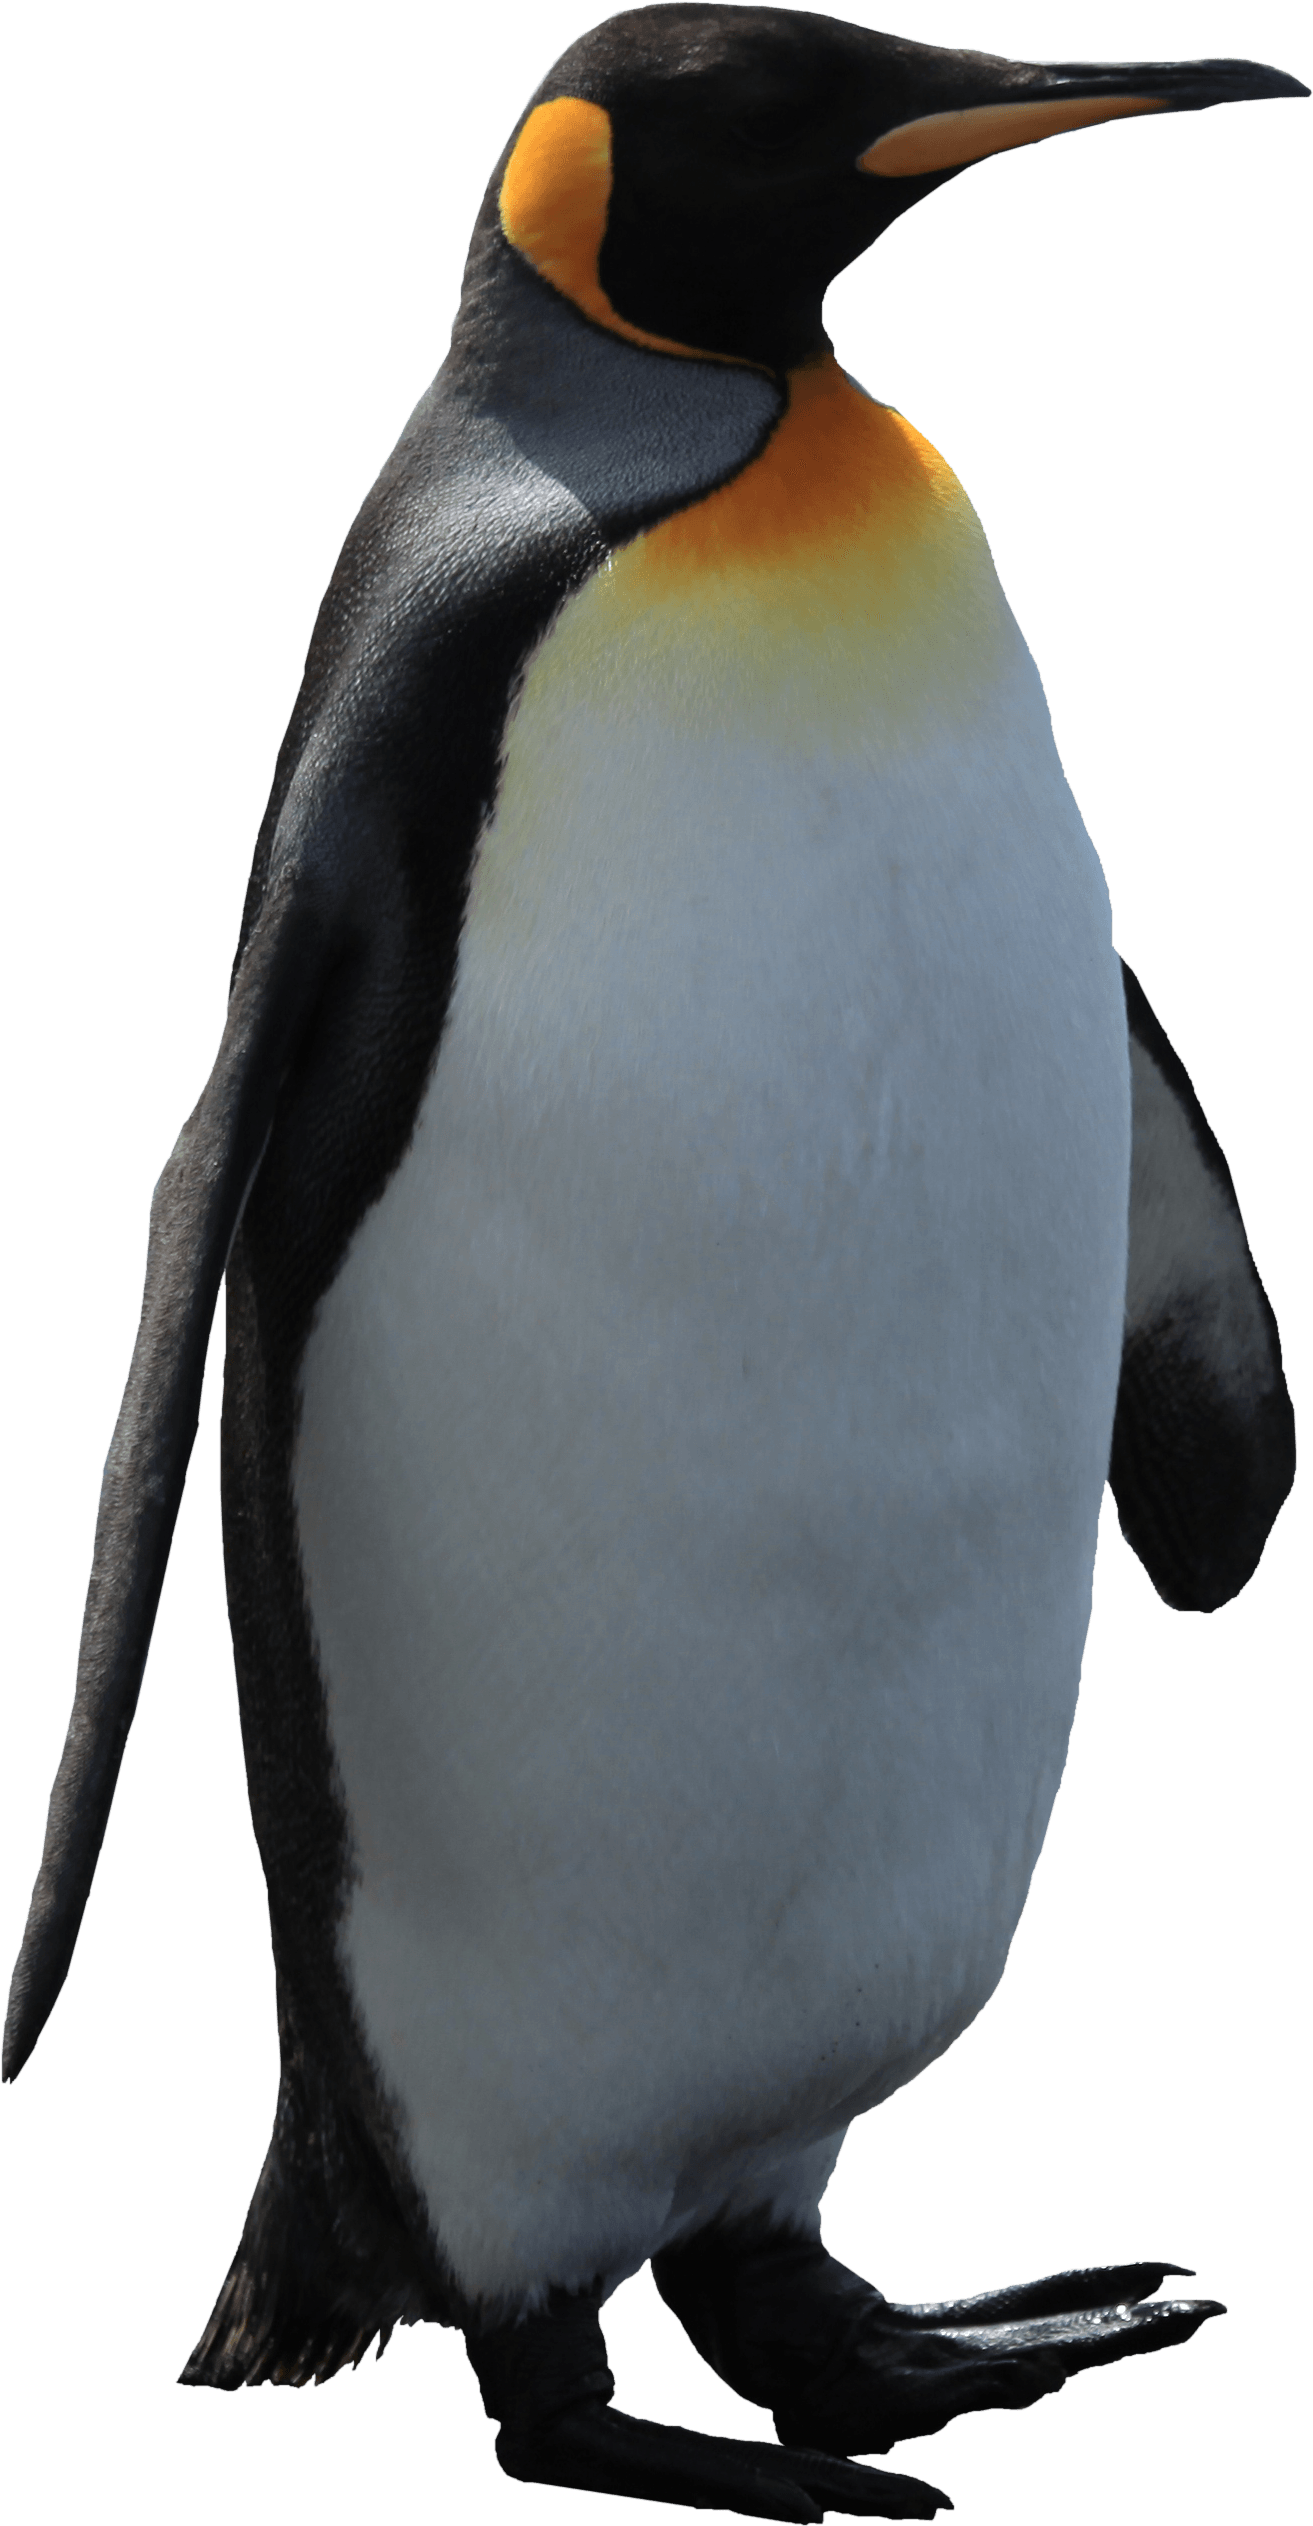 Пингвины из мадагаскара фон